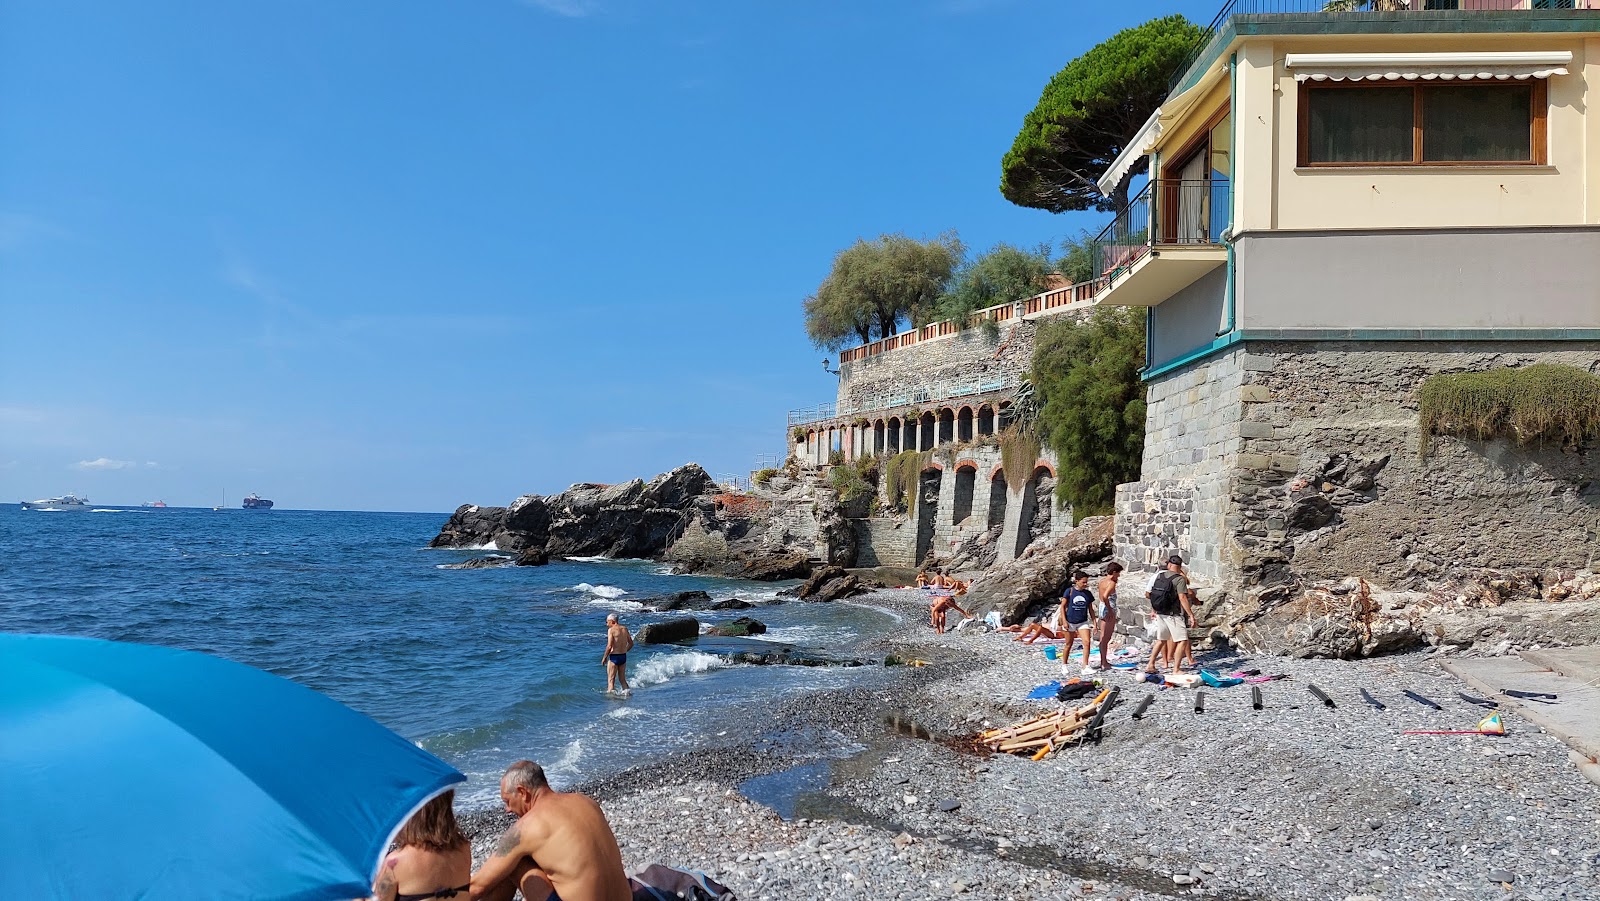 Spiaggia Pubblica Capolungo的照片 带有蓝色纯水表面